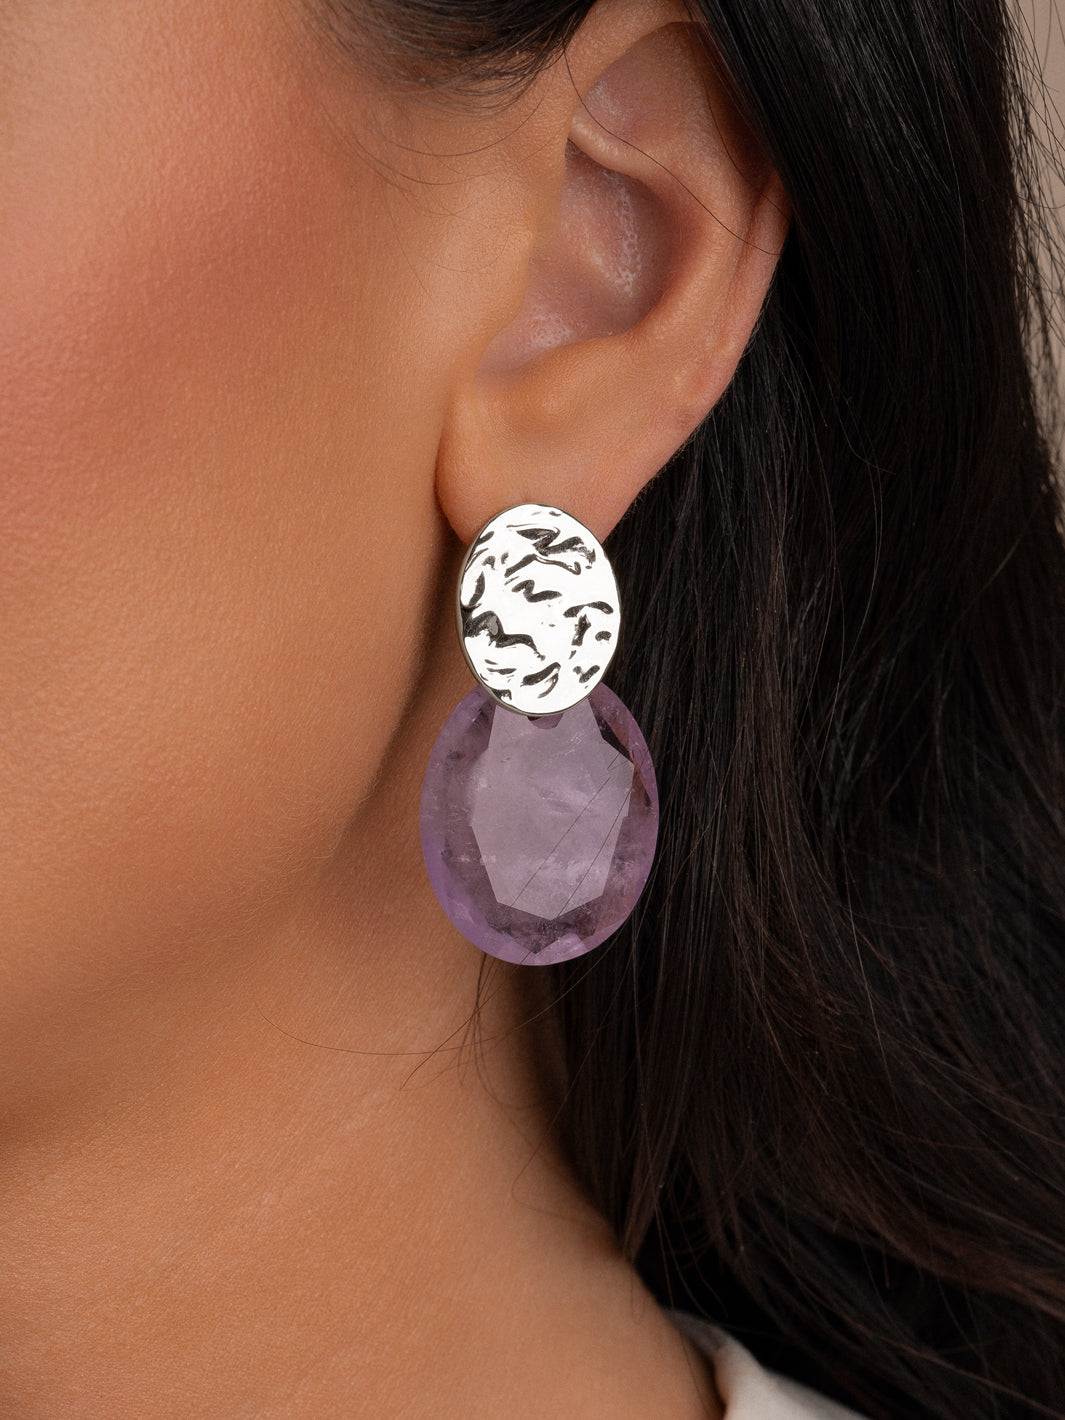 Verrijk je oorbellen collectie met Sparkling: Amethyst Large Oval edelstenen voor een luxe uitstraling.